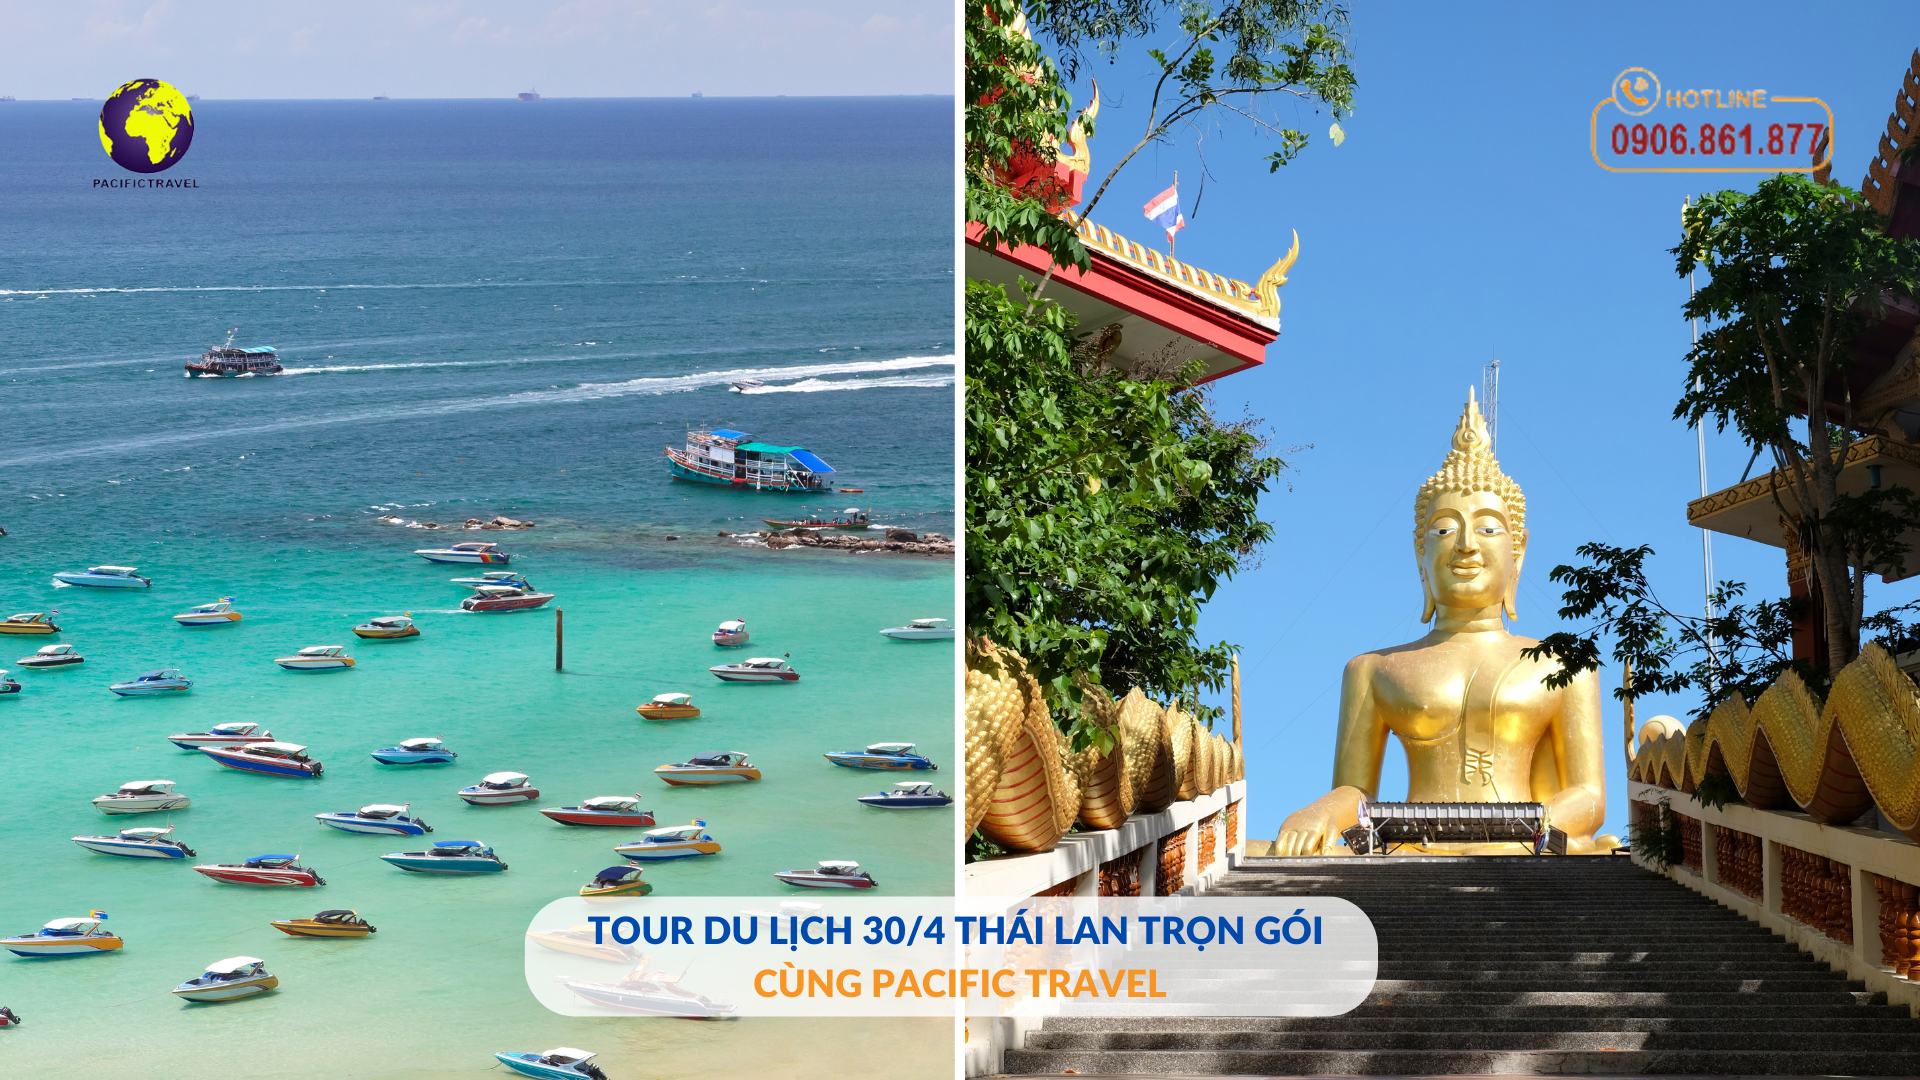 Tour-du-lich-Thai-Lan-tron-goi-30-4-cung-Pacific-Travel